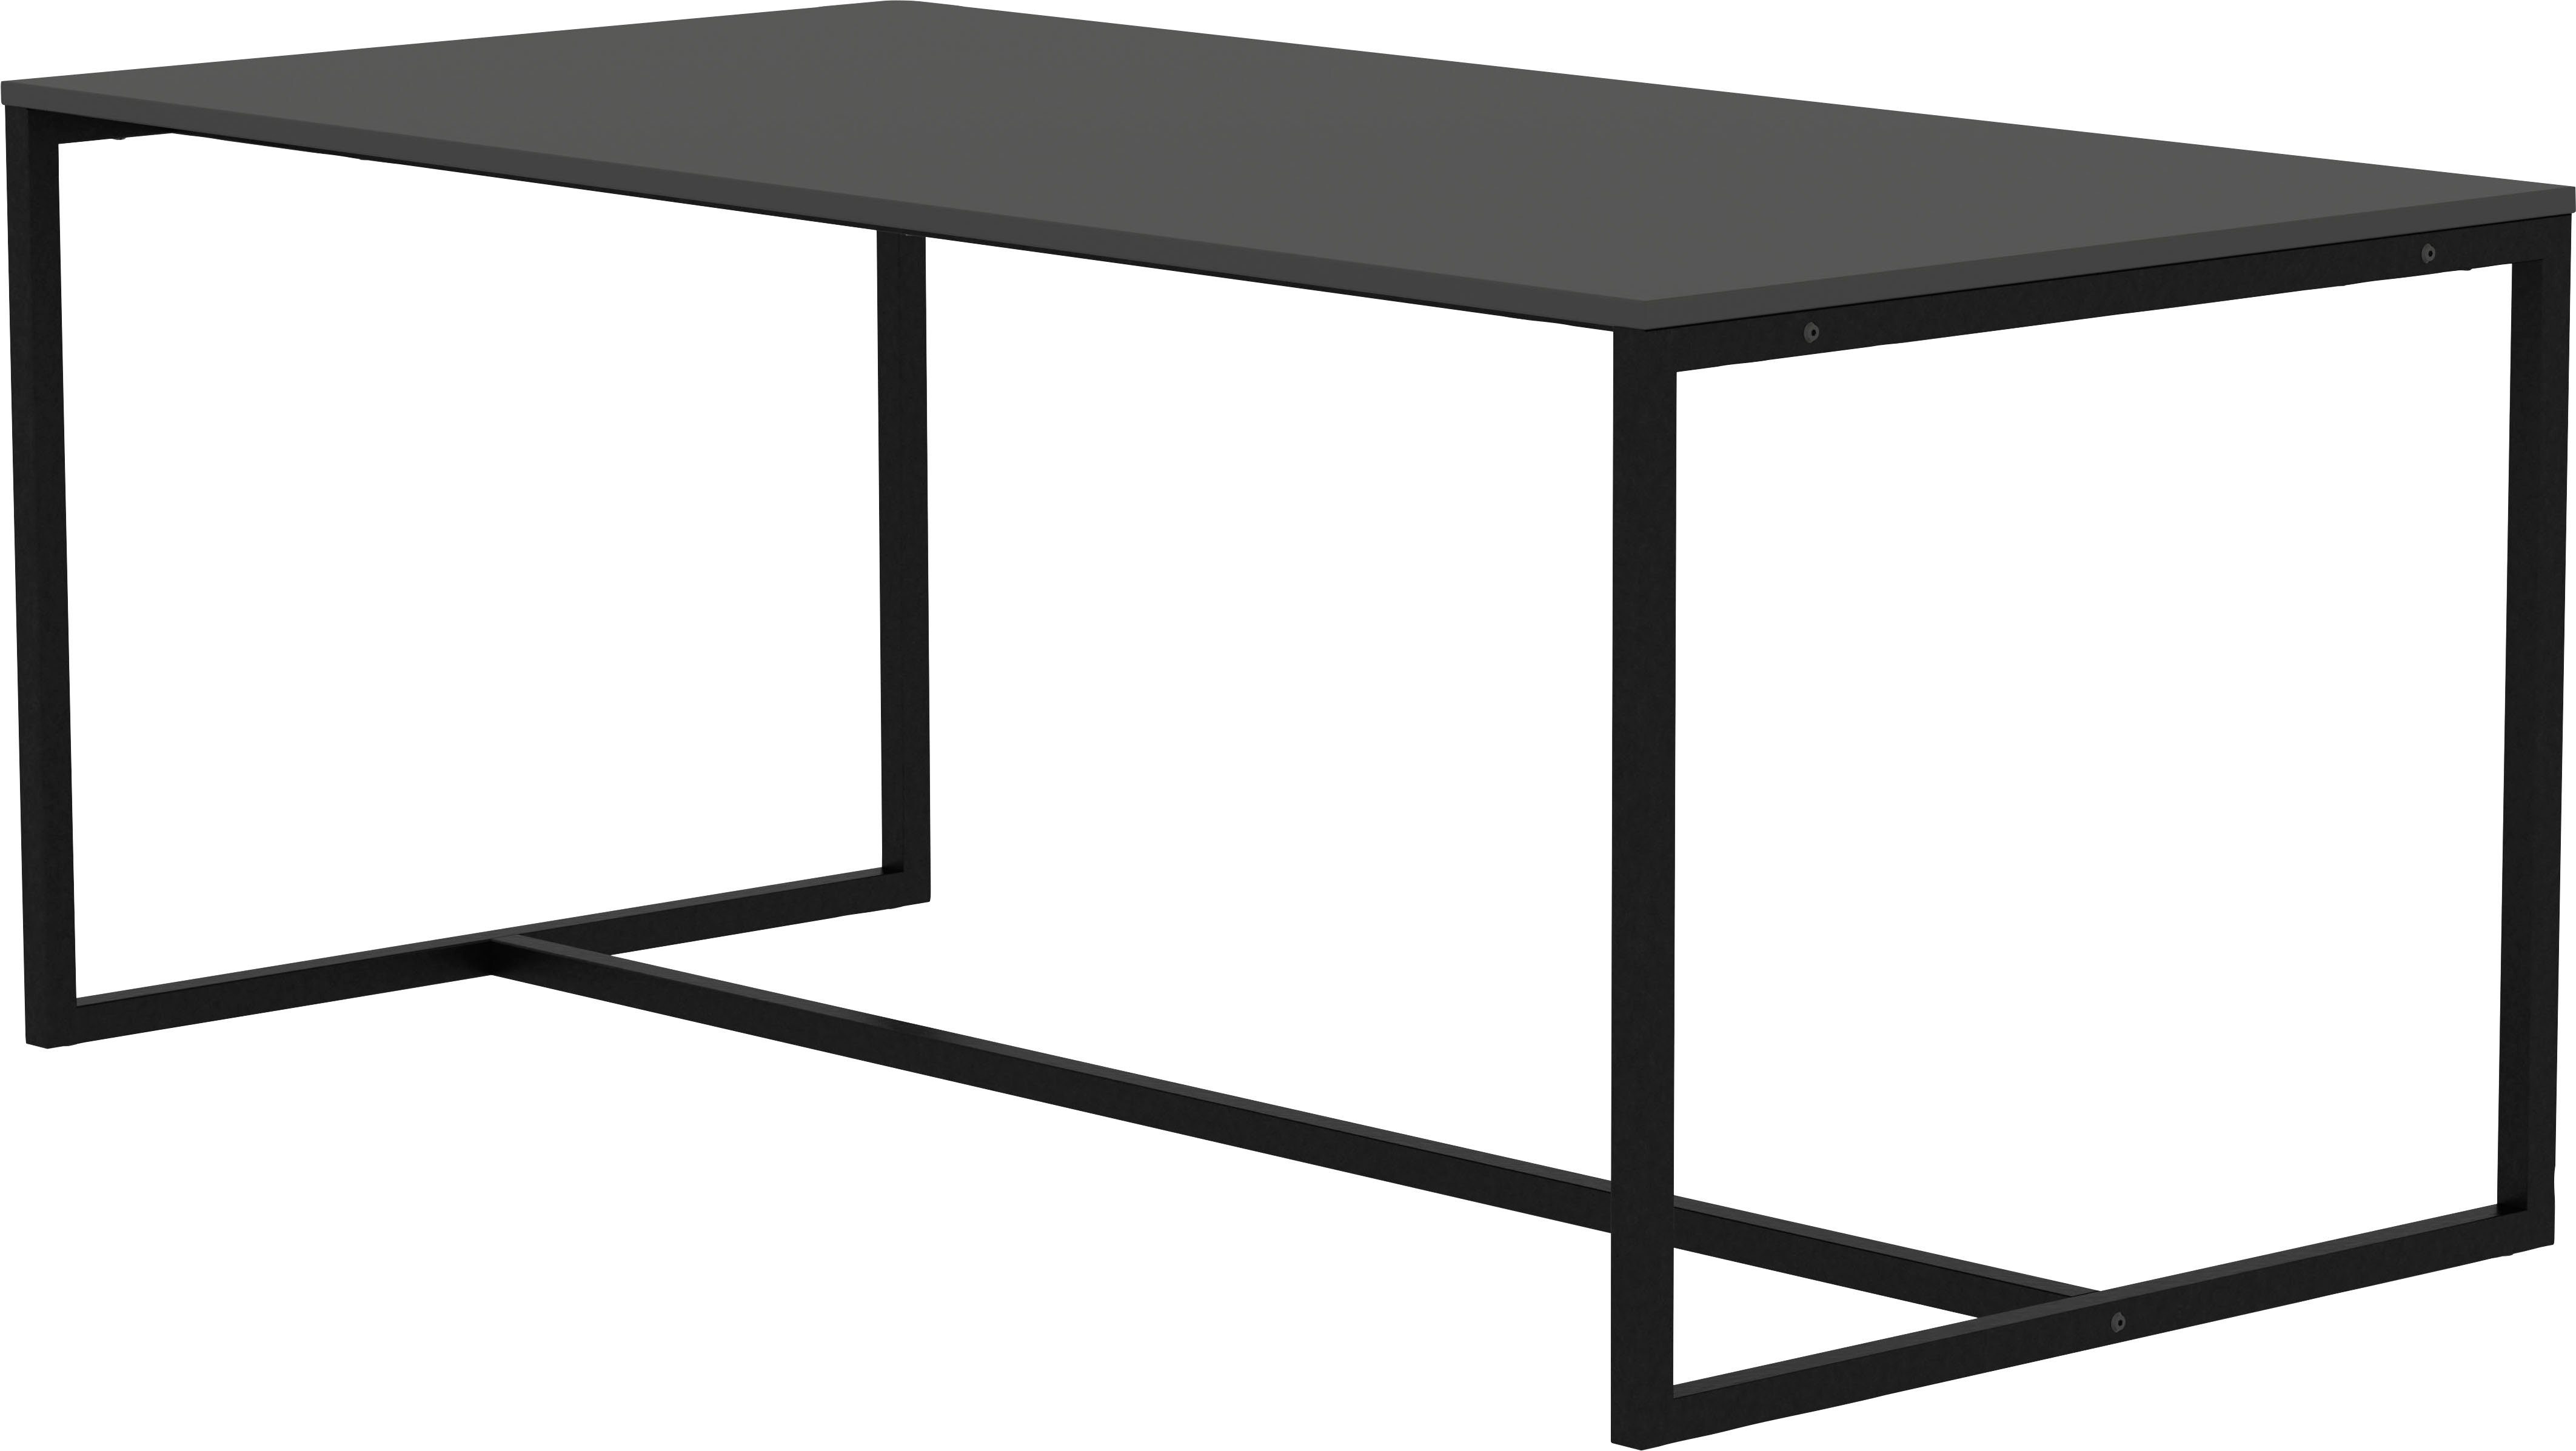 180 cm Tenzo Breite | Tenzo shadow schwarz LIPP, studio, Design Esstisch shadow Design von schwarz